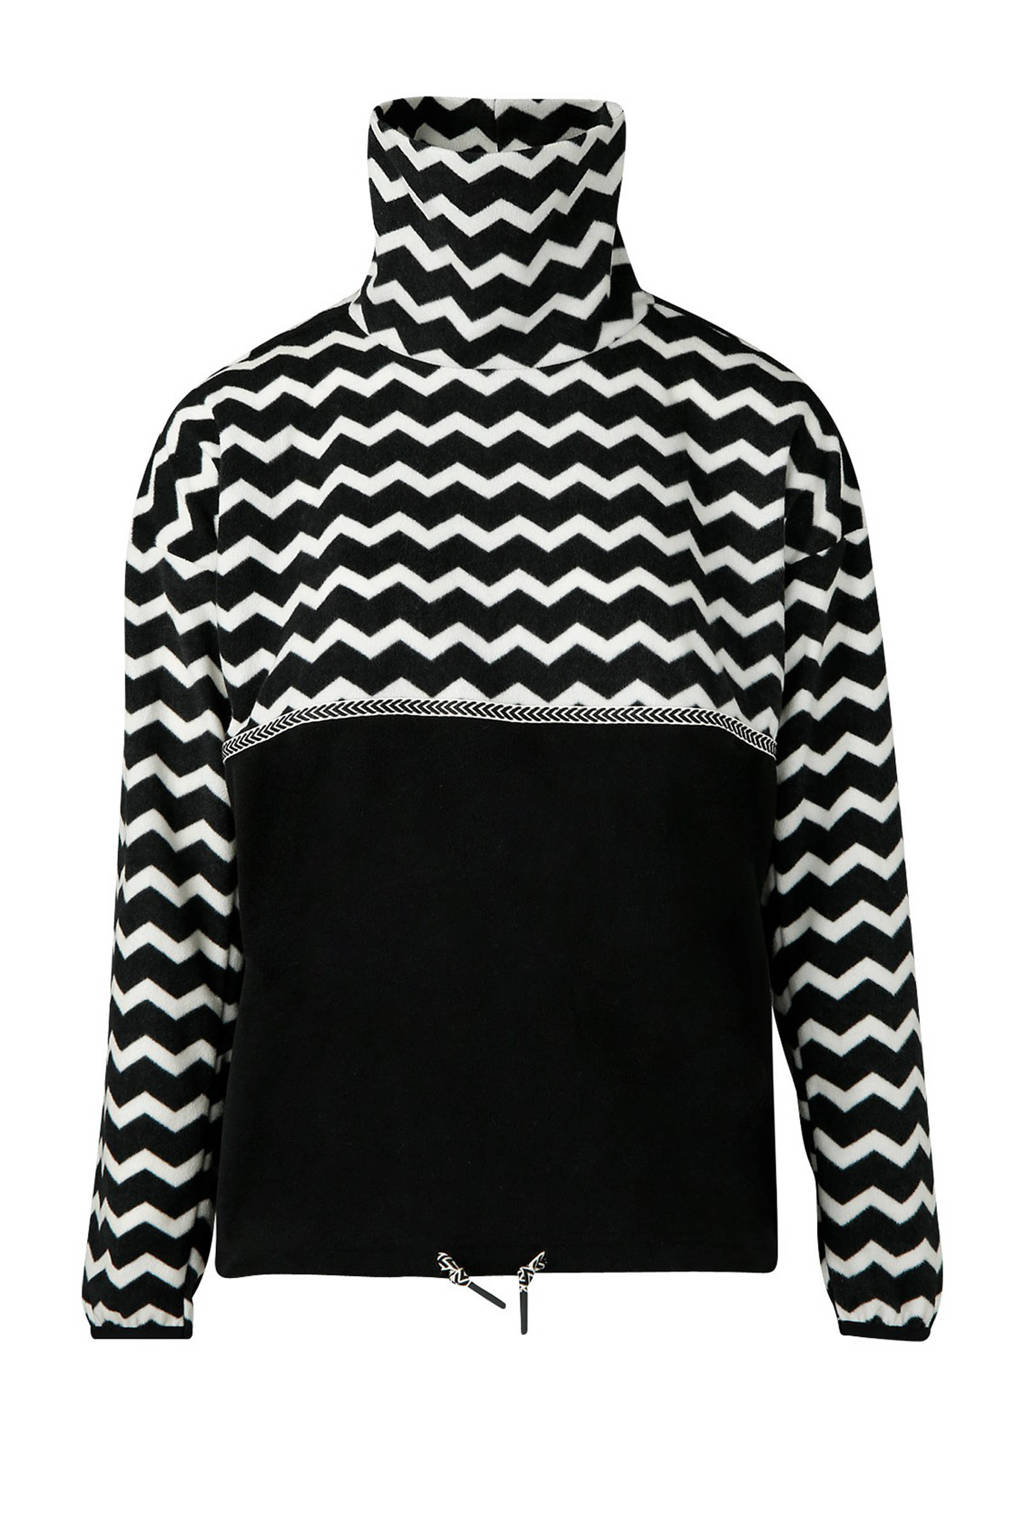 Brunotti fleece skisweater Deja zwart/wit, Zwart/wit